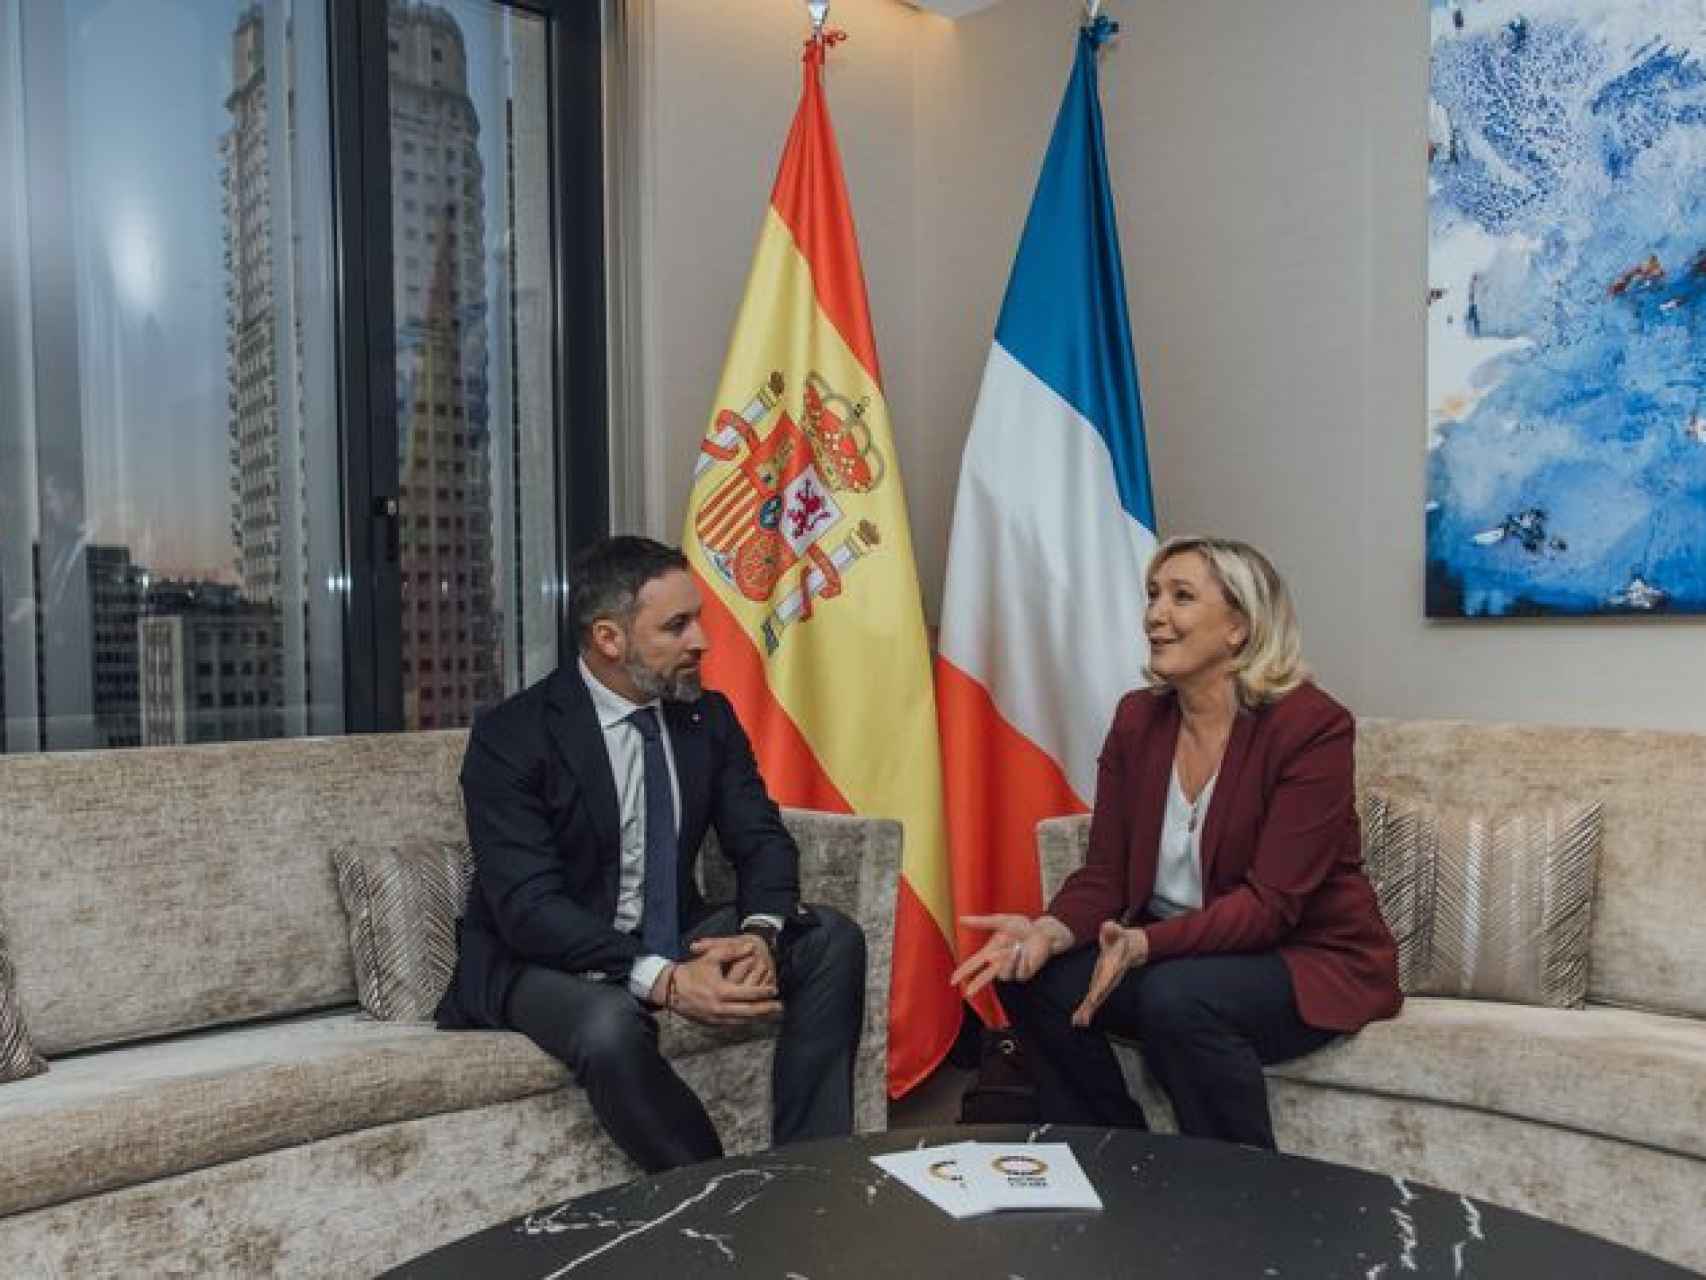 El líder de Vox, Santiago Abascal, reunido con Marine Le Pen en Madrid, el pasado 26 de enero.